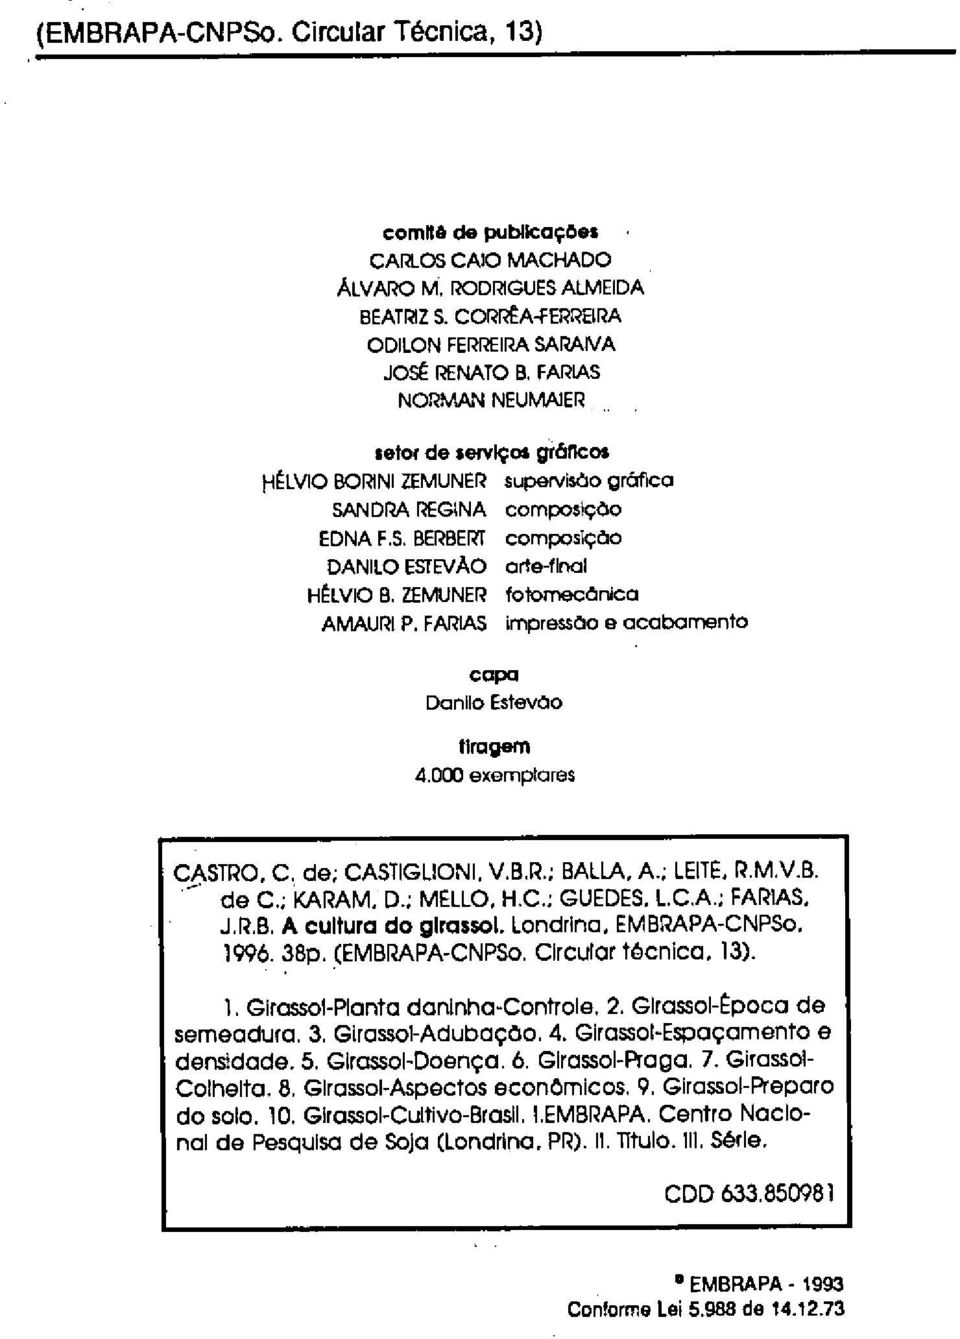 ZEMUNER fotornecânica AMAIJRI P. FNLAS impressão e acabamento capa Danhlo Estevão tiragem 4.000 exemplares CASTRO. C, de; CASTIGLIONI. V.B.R.; BALLA, A.; LEITE, P.M.V.B. de C.; KAIRAM. D.; MELLO, H.C.; GUEDES.